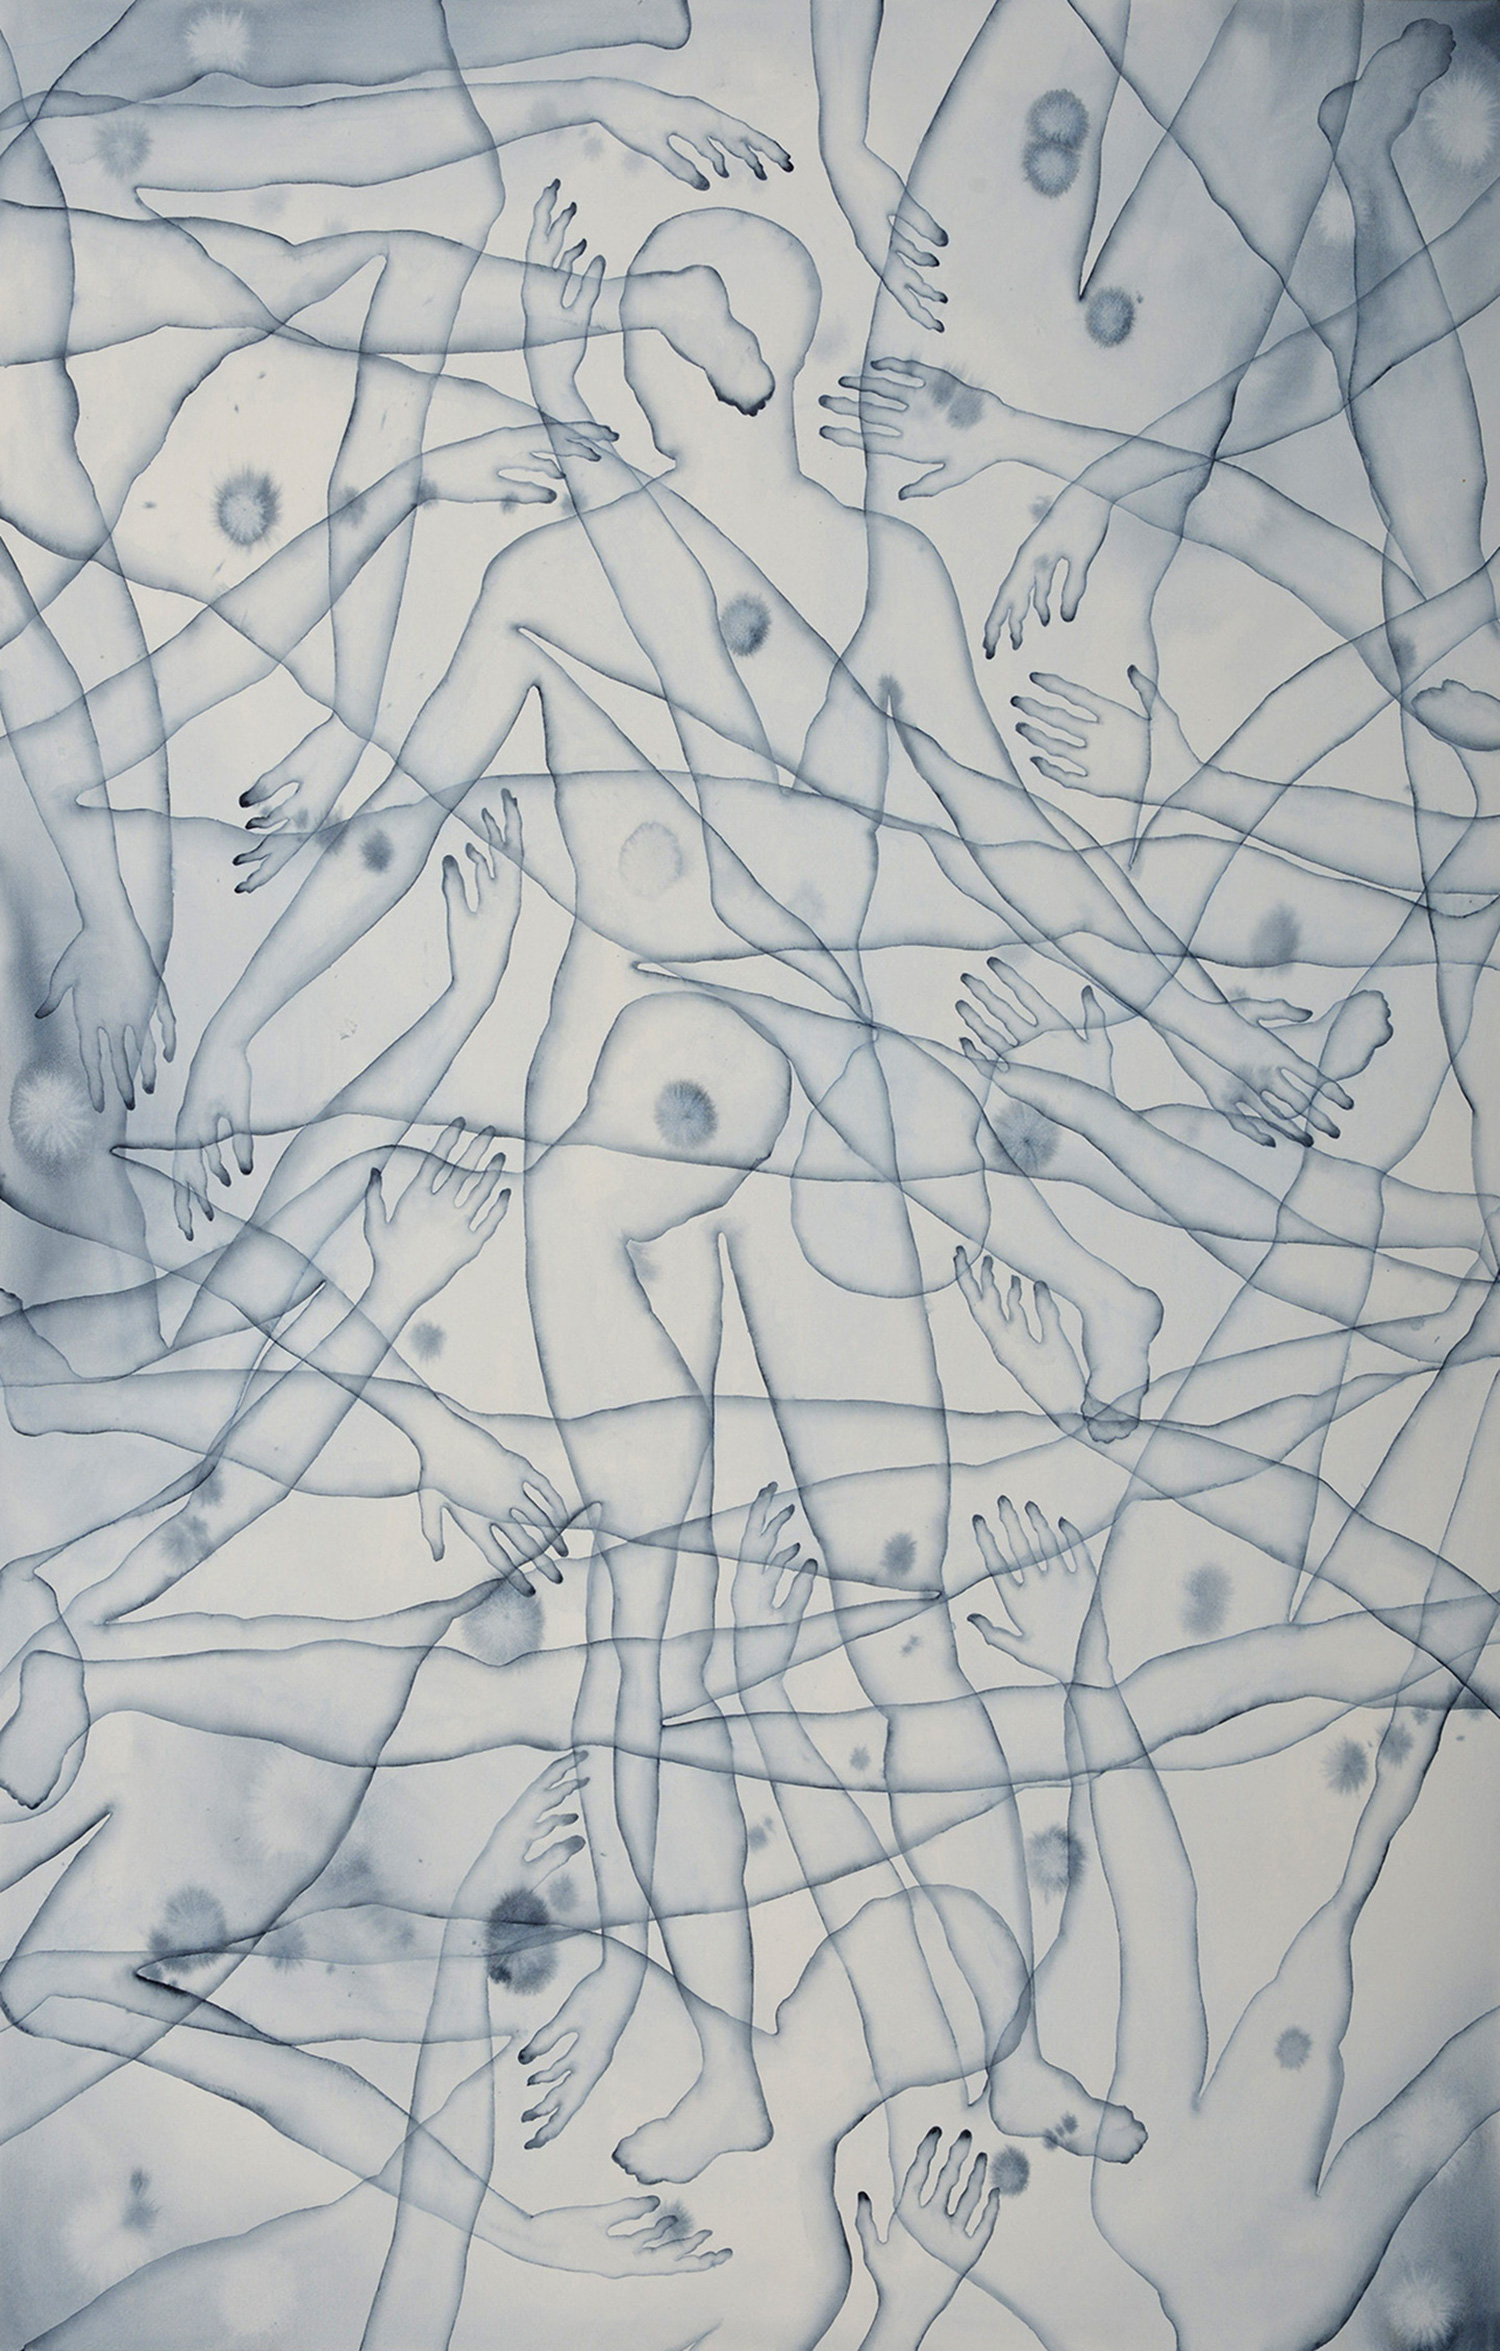 Stefano Bolzano, Co-esistenza emotiva, acquerello su carta, 86x135 cm, 2020.